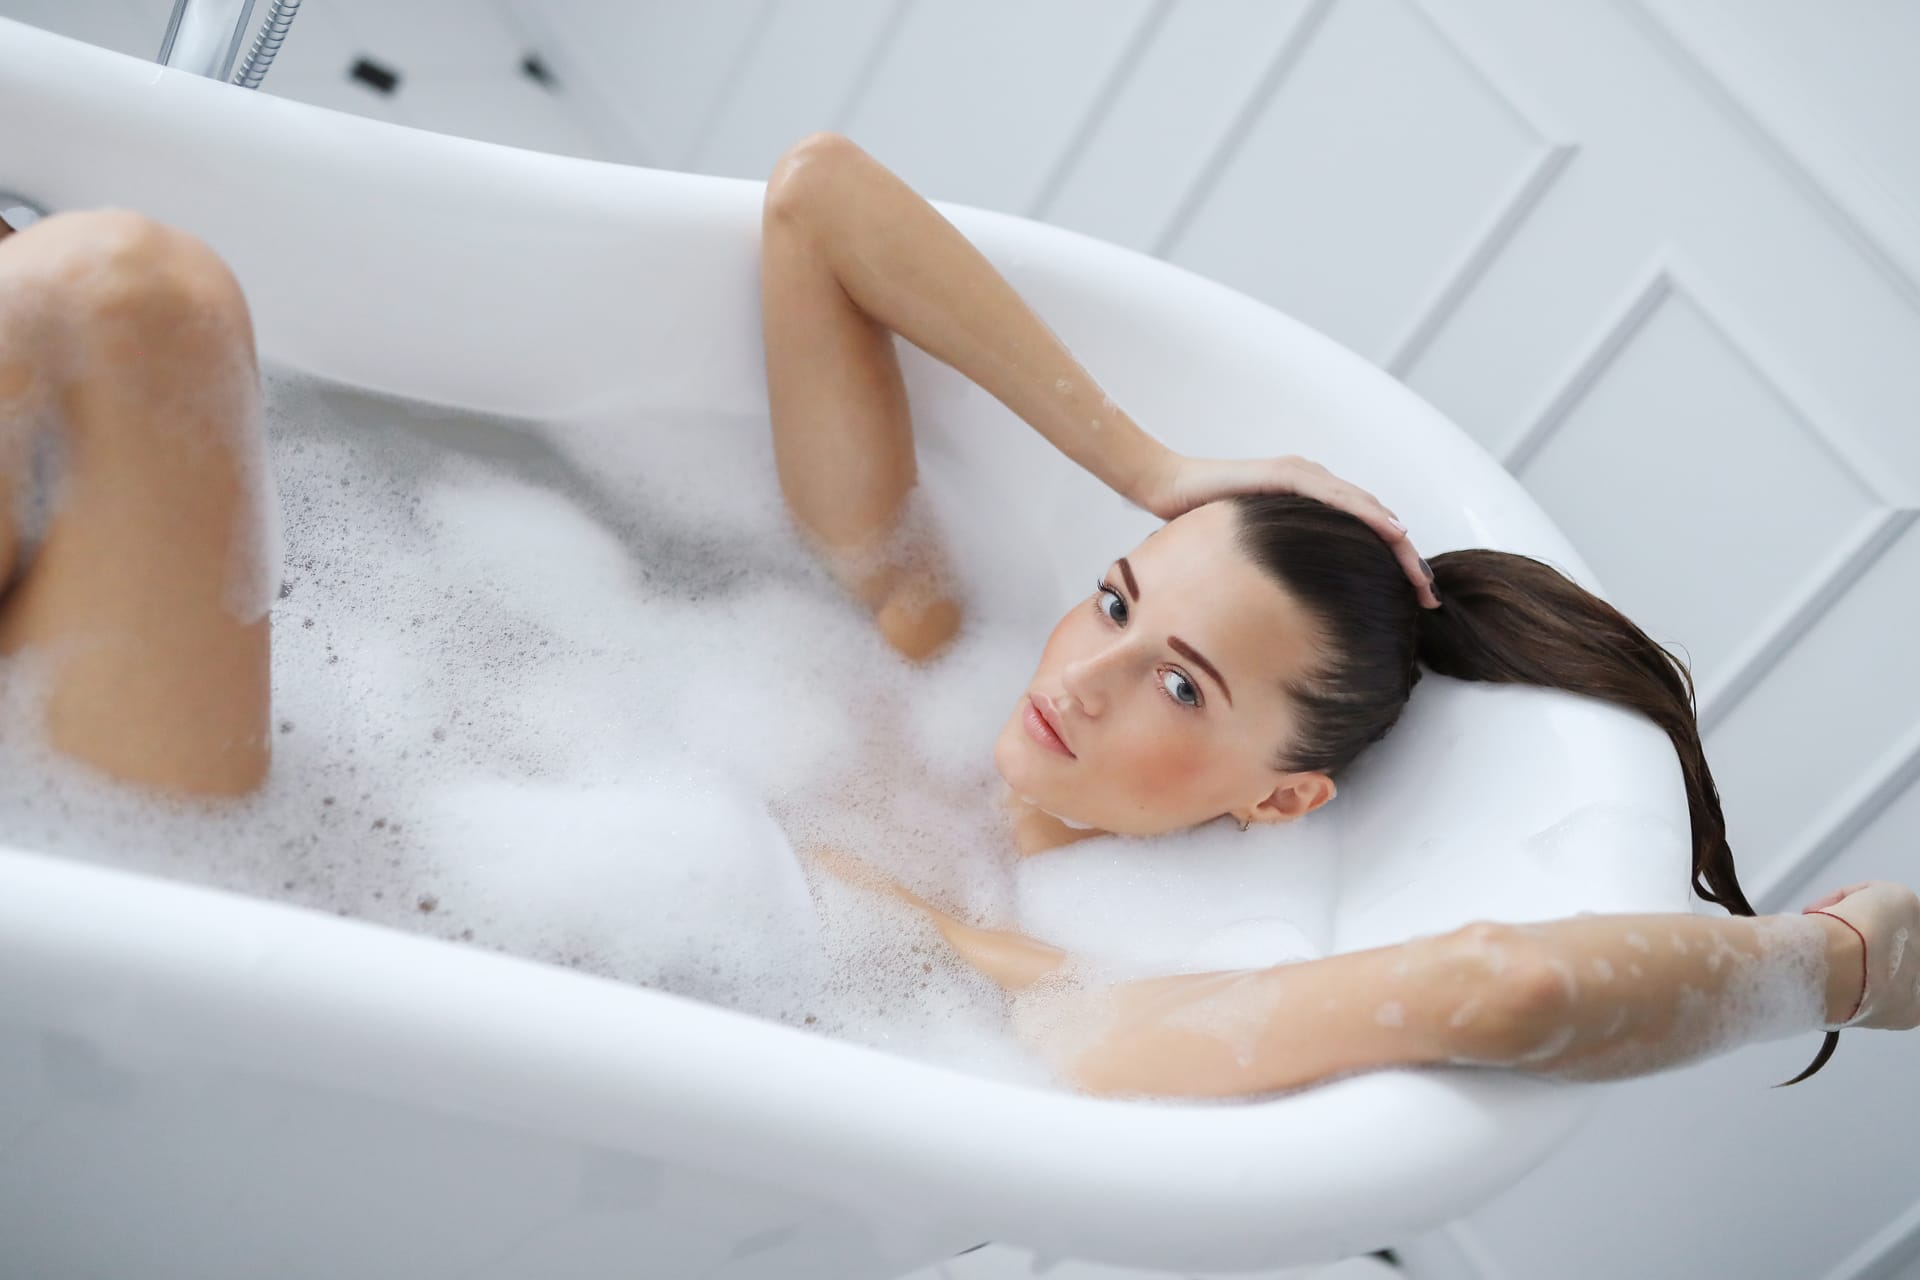 Young nude woman taking relaxing foamy bath